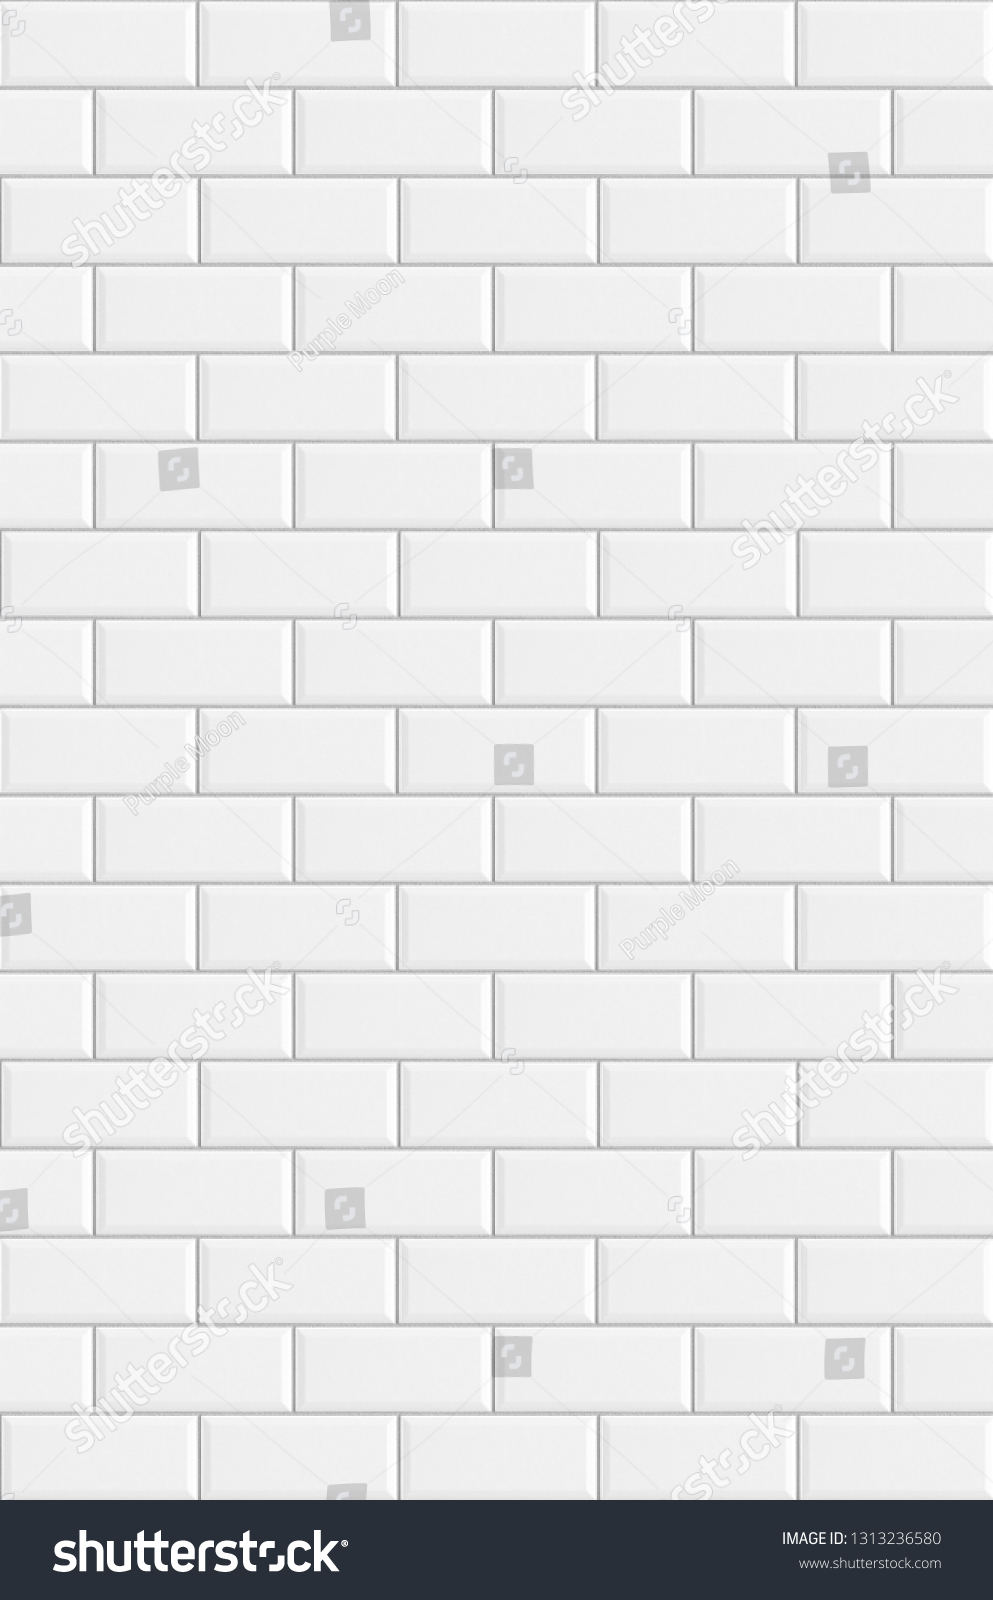 White Rectangle Mosaic Tiles Texture Background Stock Photo 1313236580 ...